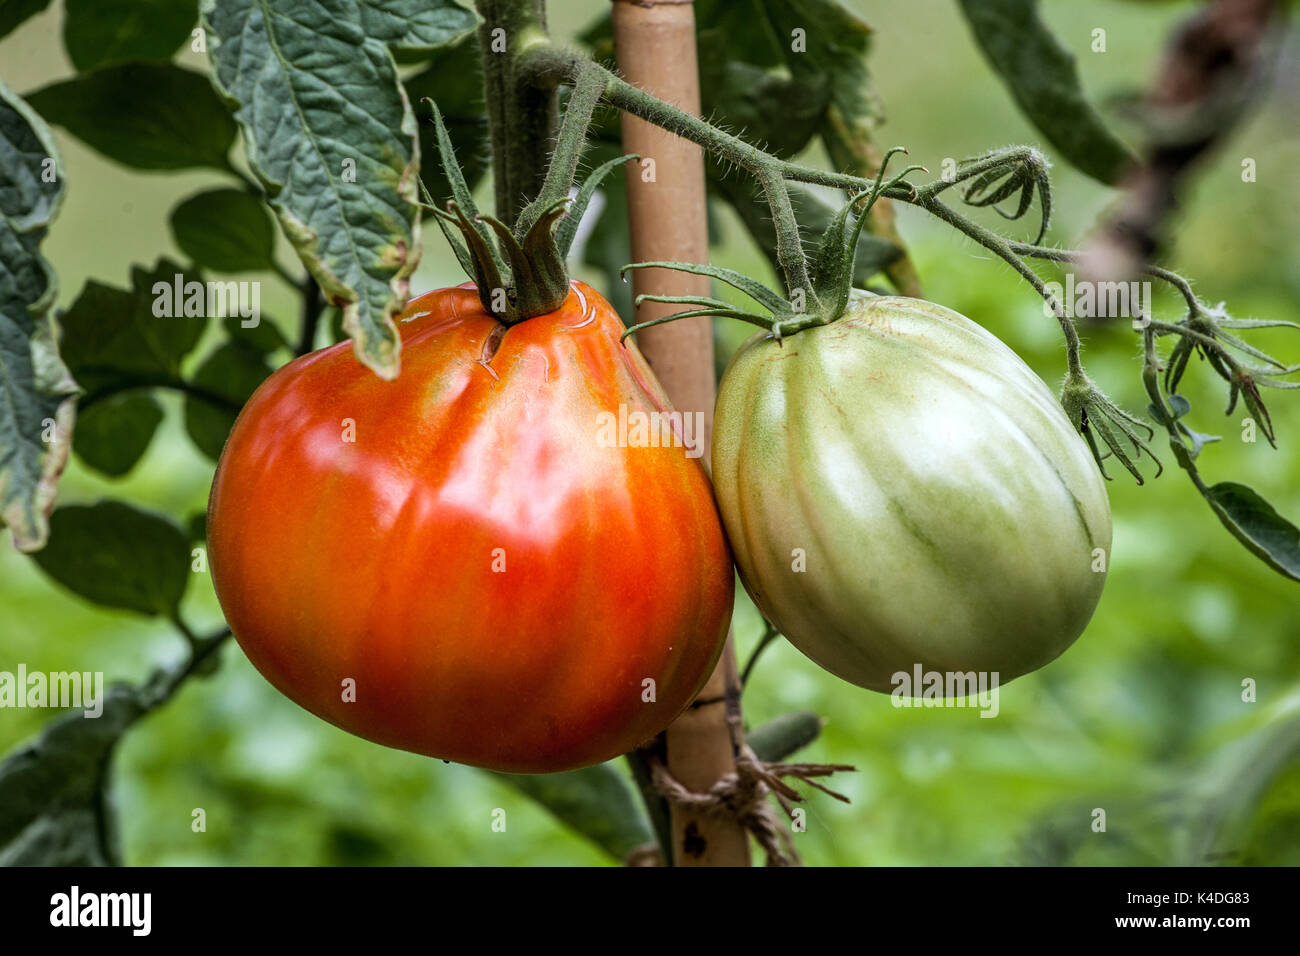 Tomatenpflanze auf Weinrebe, Tomaten reifen auf den Weinreben wachsenden Früchten, die an einem Stützstock befestigt sind Stockfoto